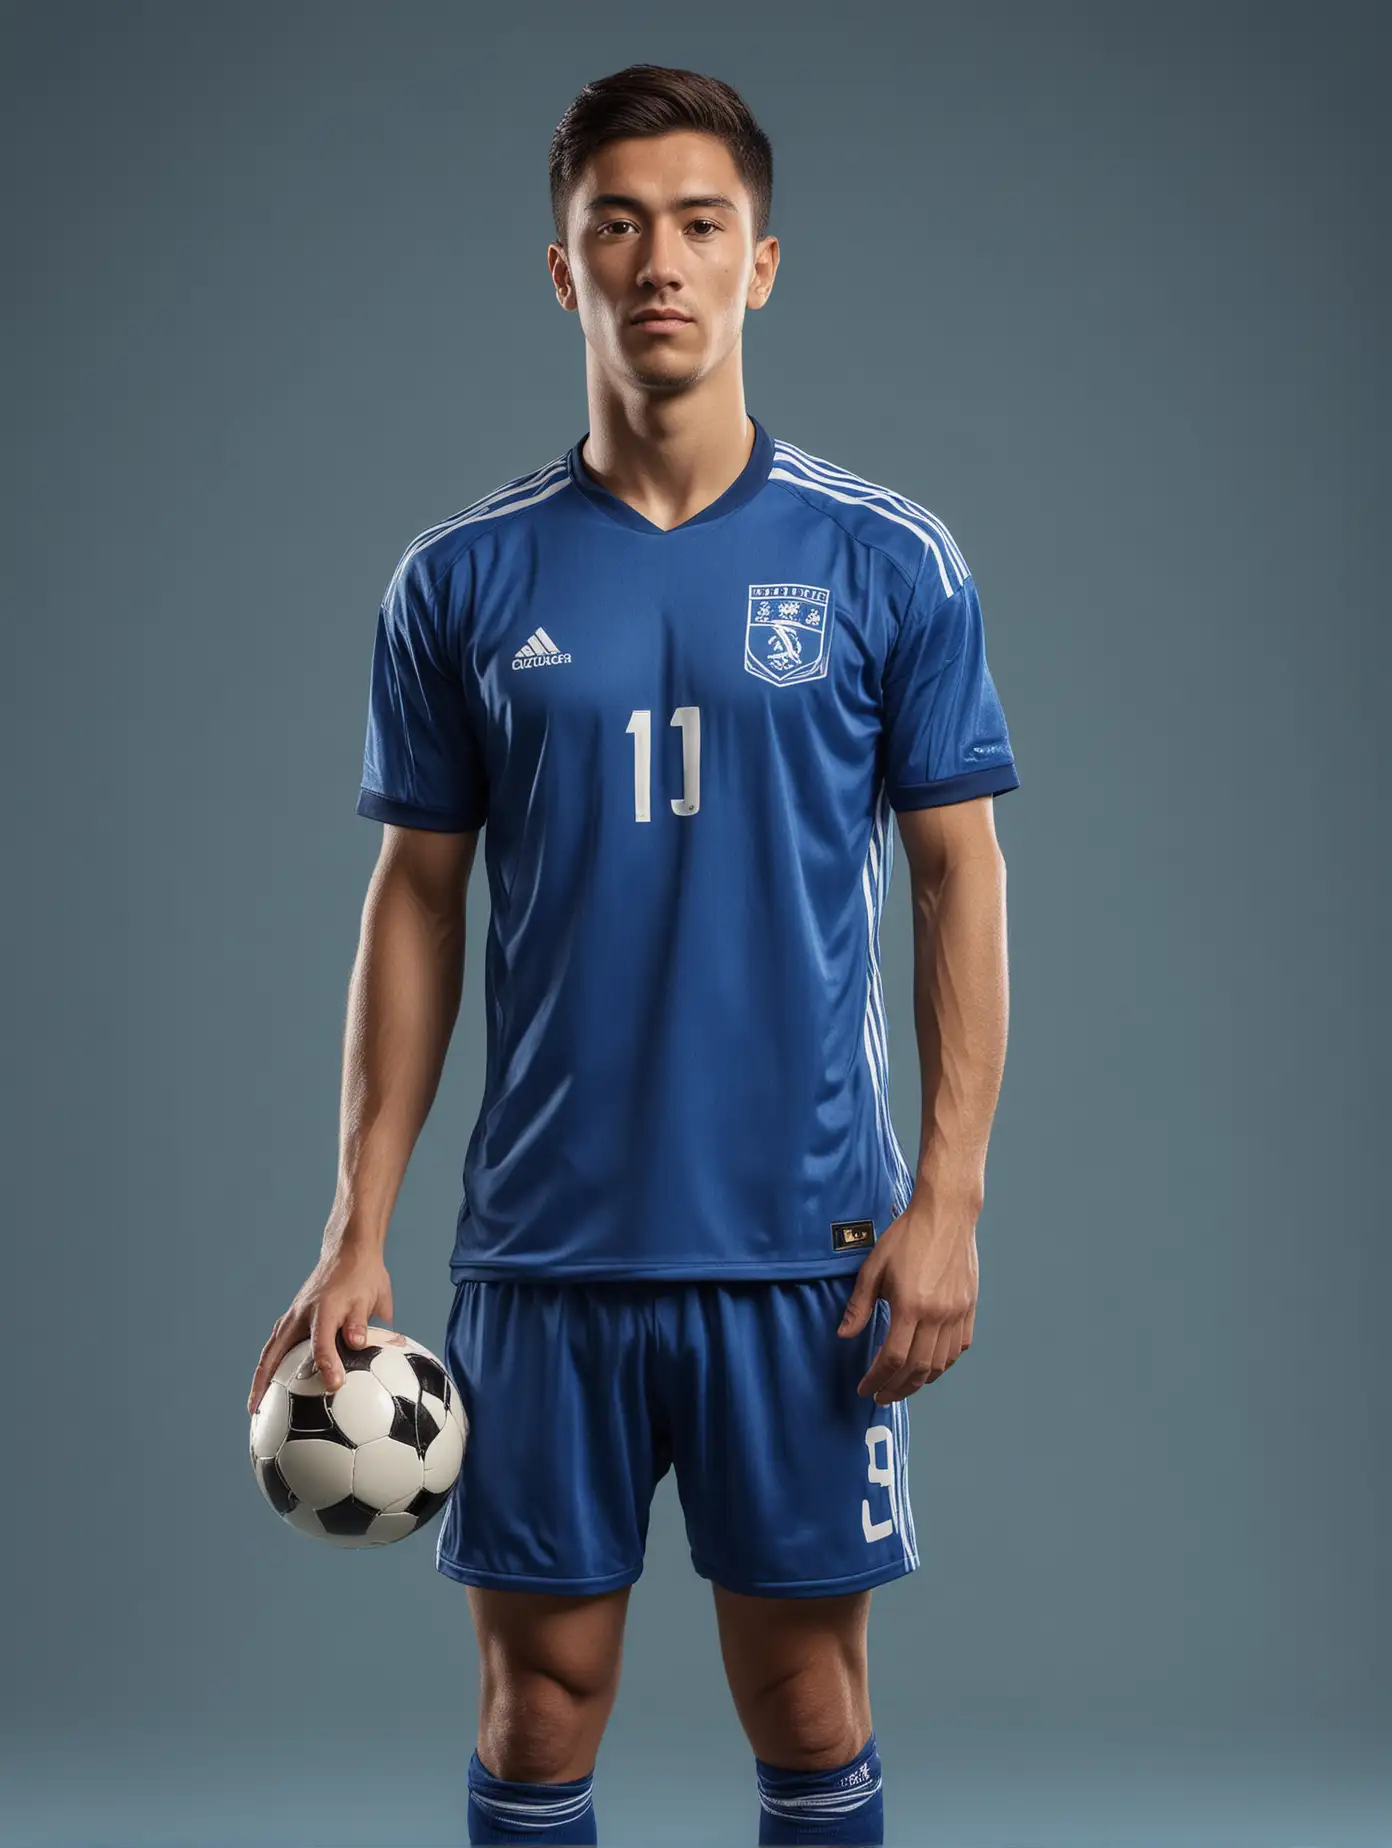 Cristiano Ronaldo in Blue Soccer Jersey Portrait